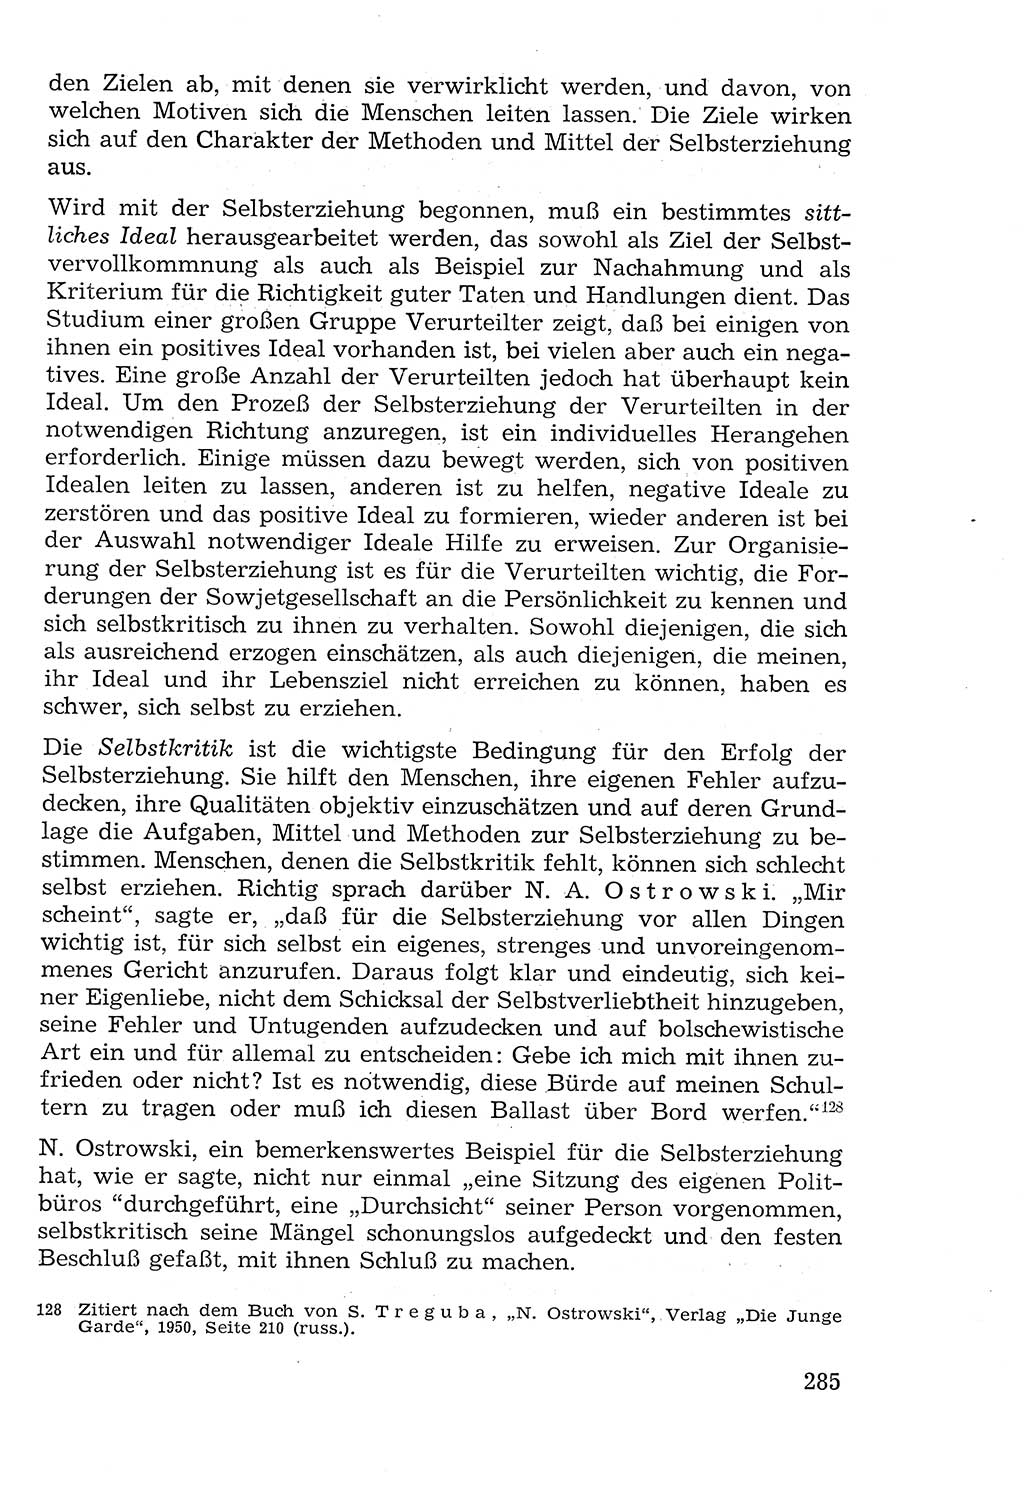 Lehrbuch der Strafvollzugspädagogik [Deutsche Demokratische Republik (DDR)] 1969, Seite 285 (Lb. SV-Pd. DDR 1969, S. 285)